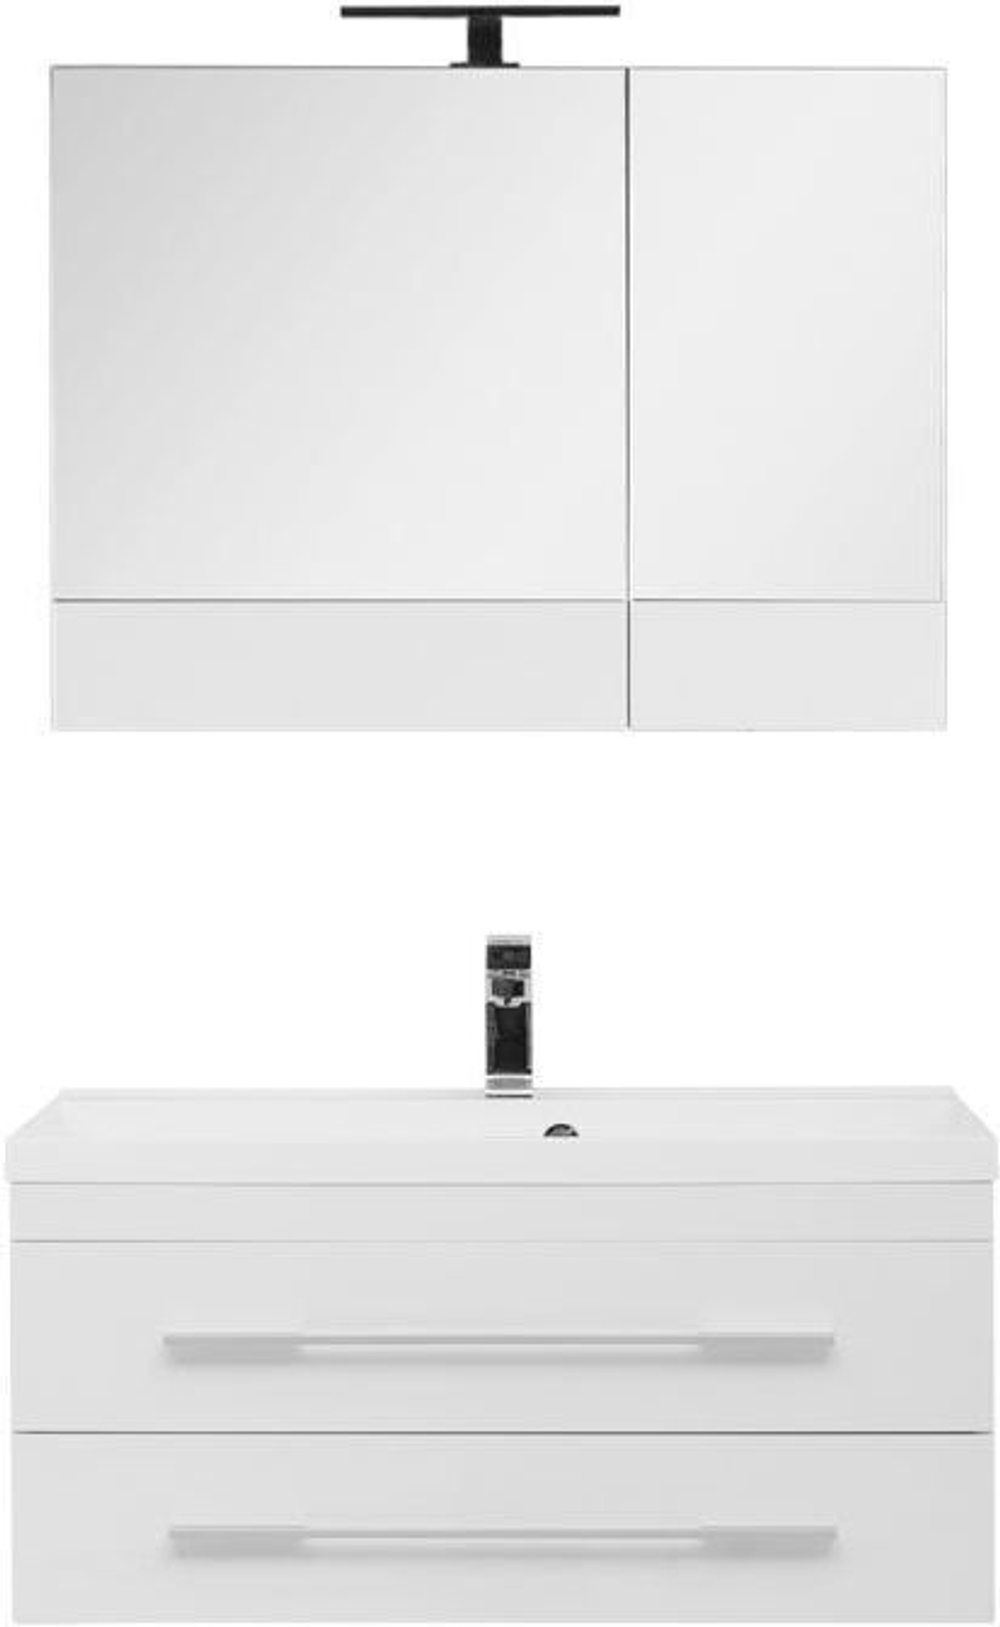 Комплект мебели для ванной Aquanet Нота 90 белый (камерино)